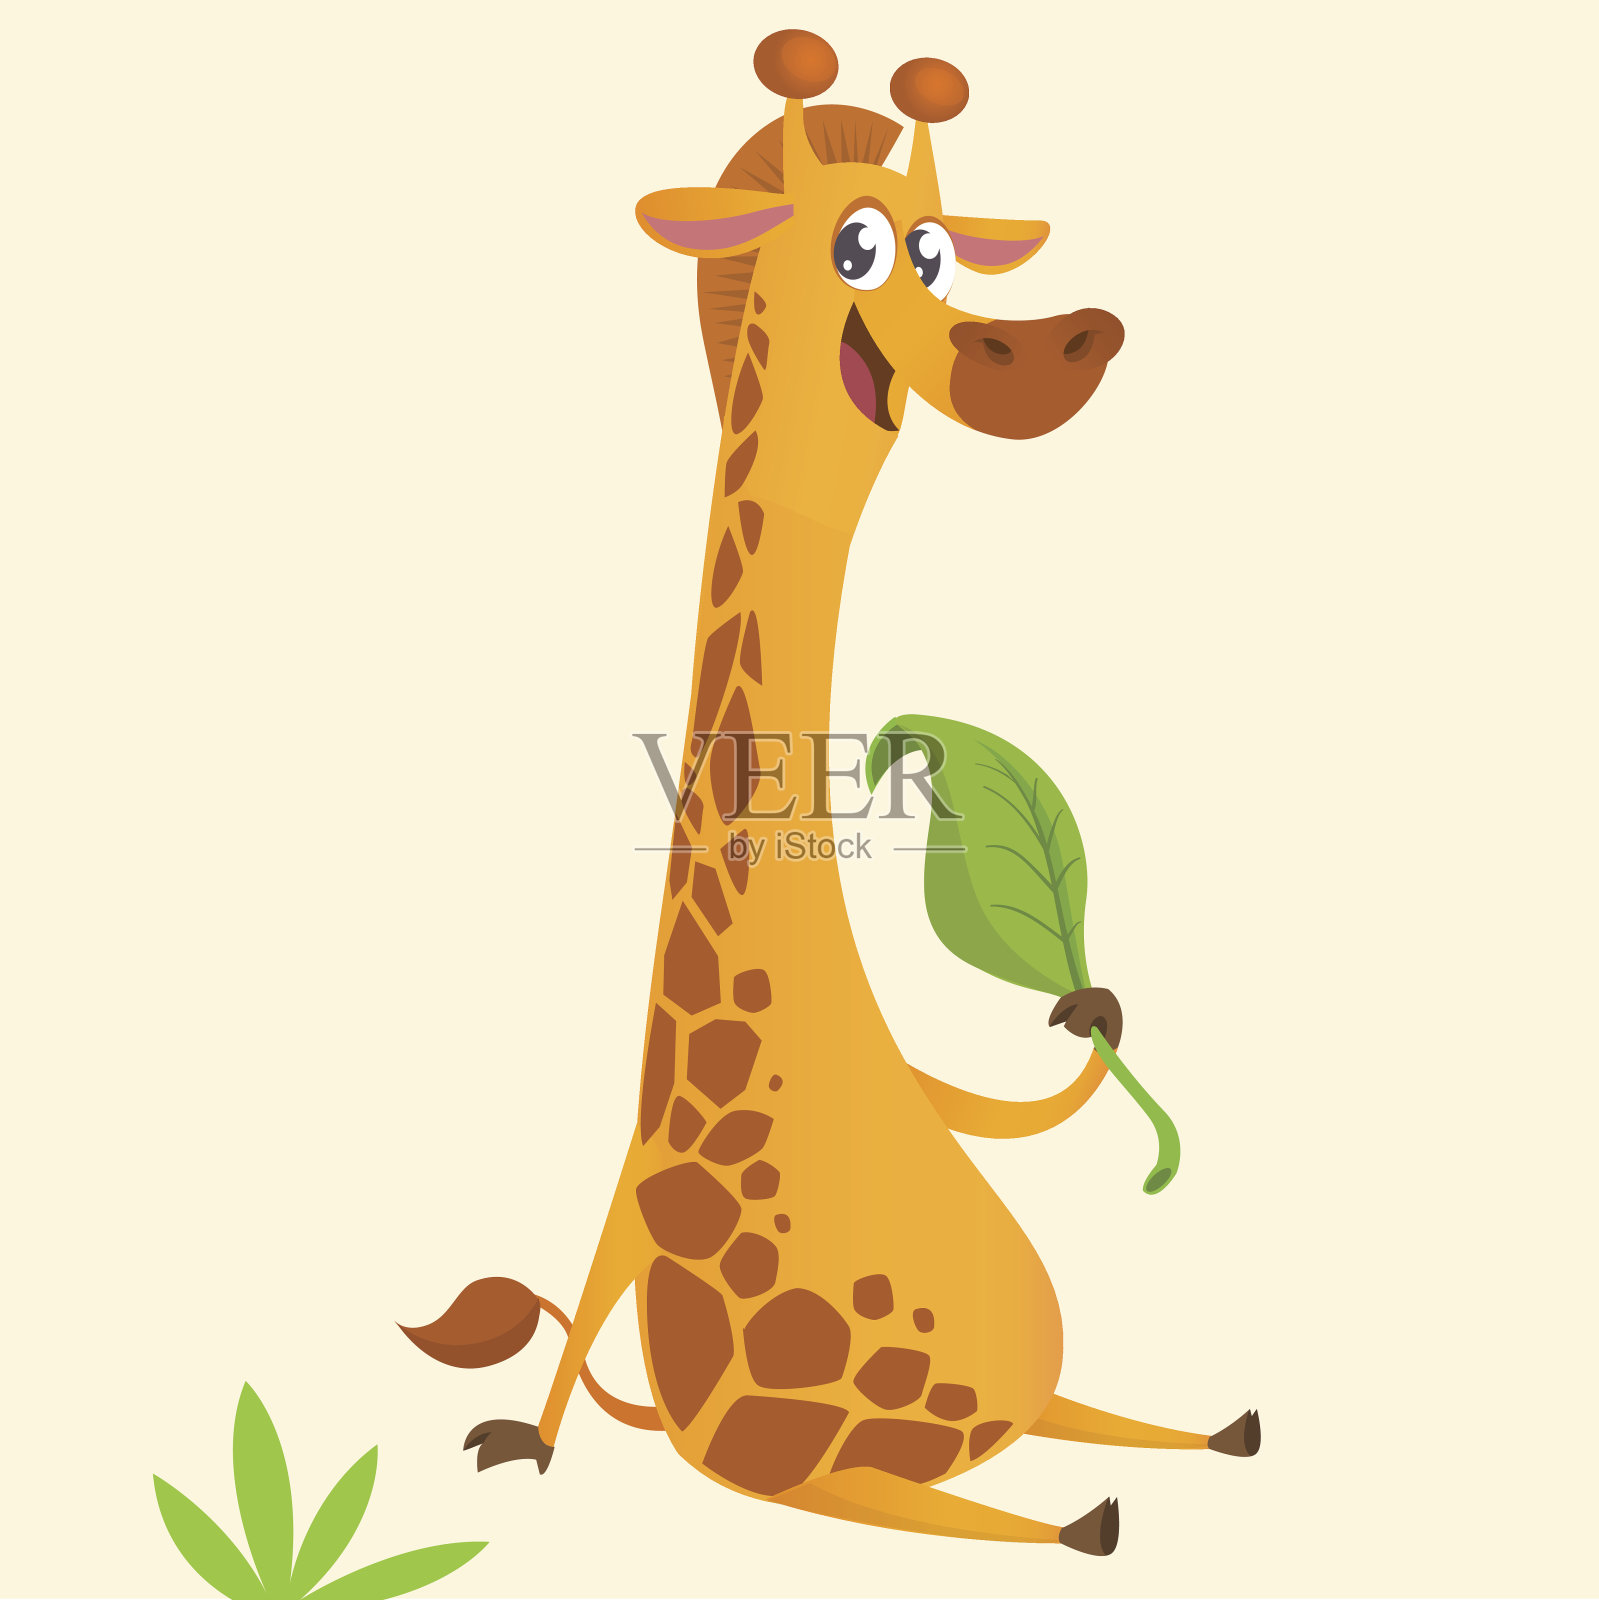 卡通长颈鹿的吉祥物。矢量插图的非洲草原长颈鹿吃一片树叶和微笑。非常适合贴纸印刷或设计插画图片素材